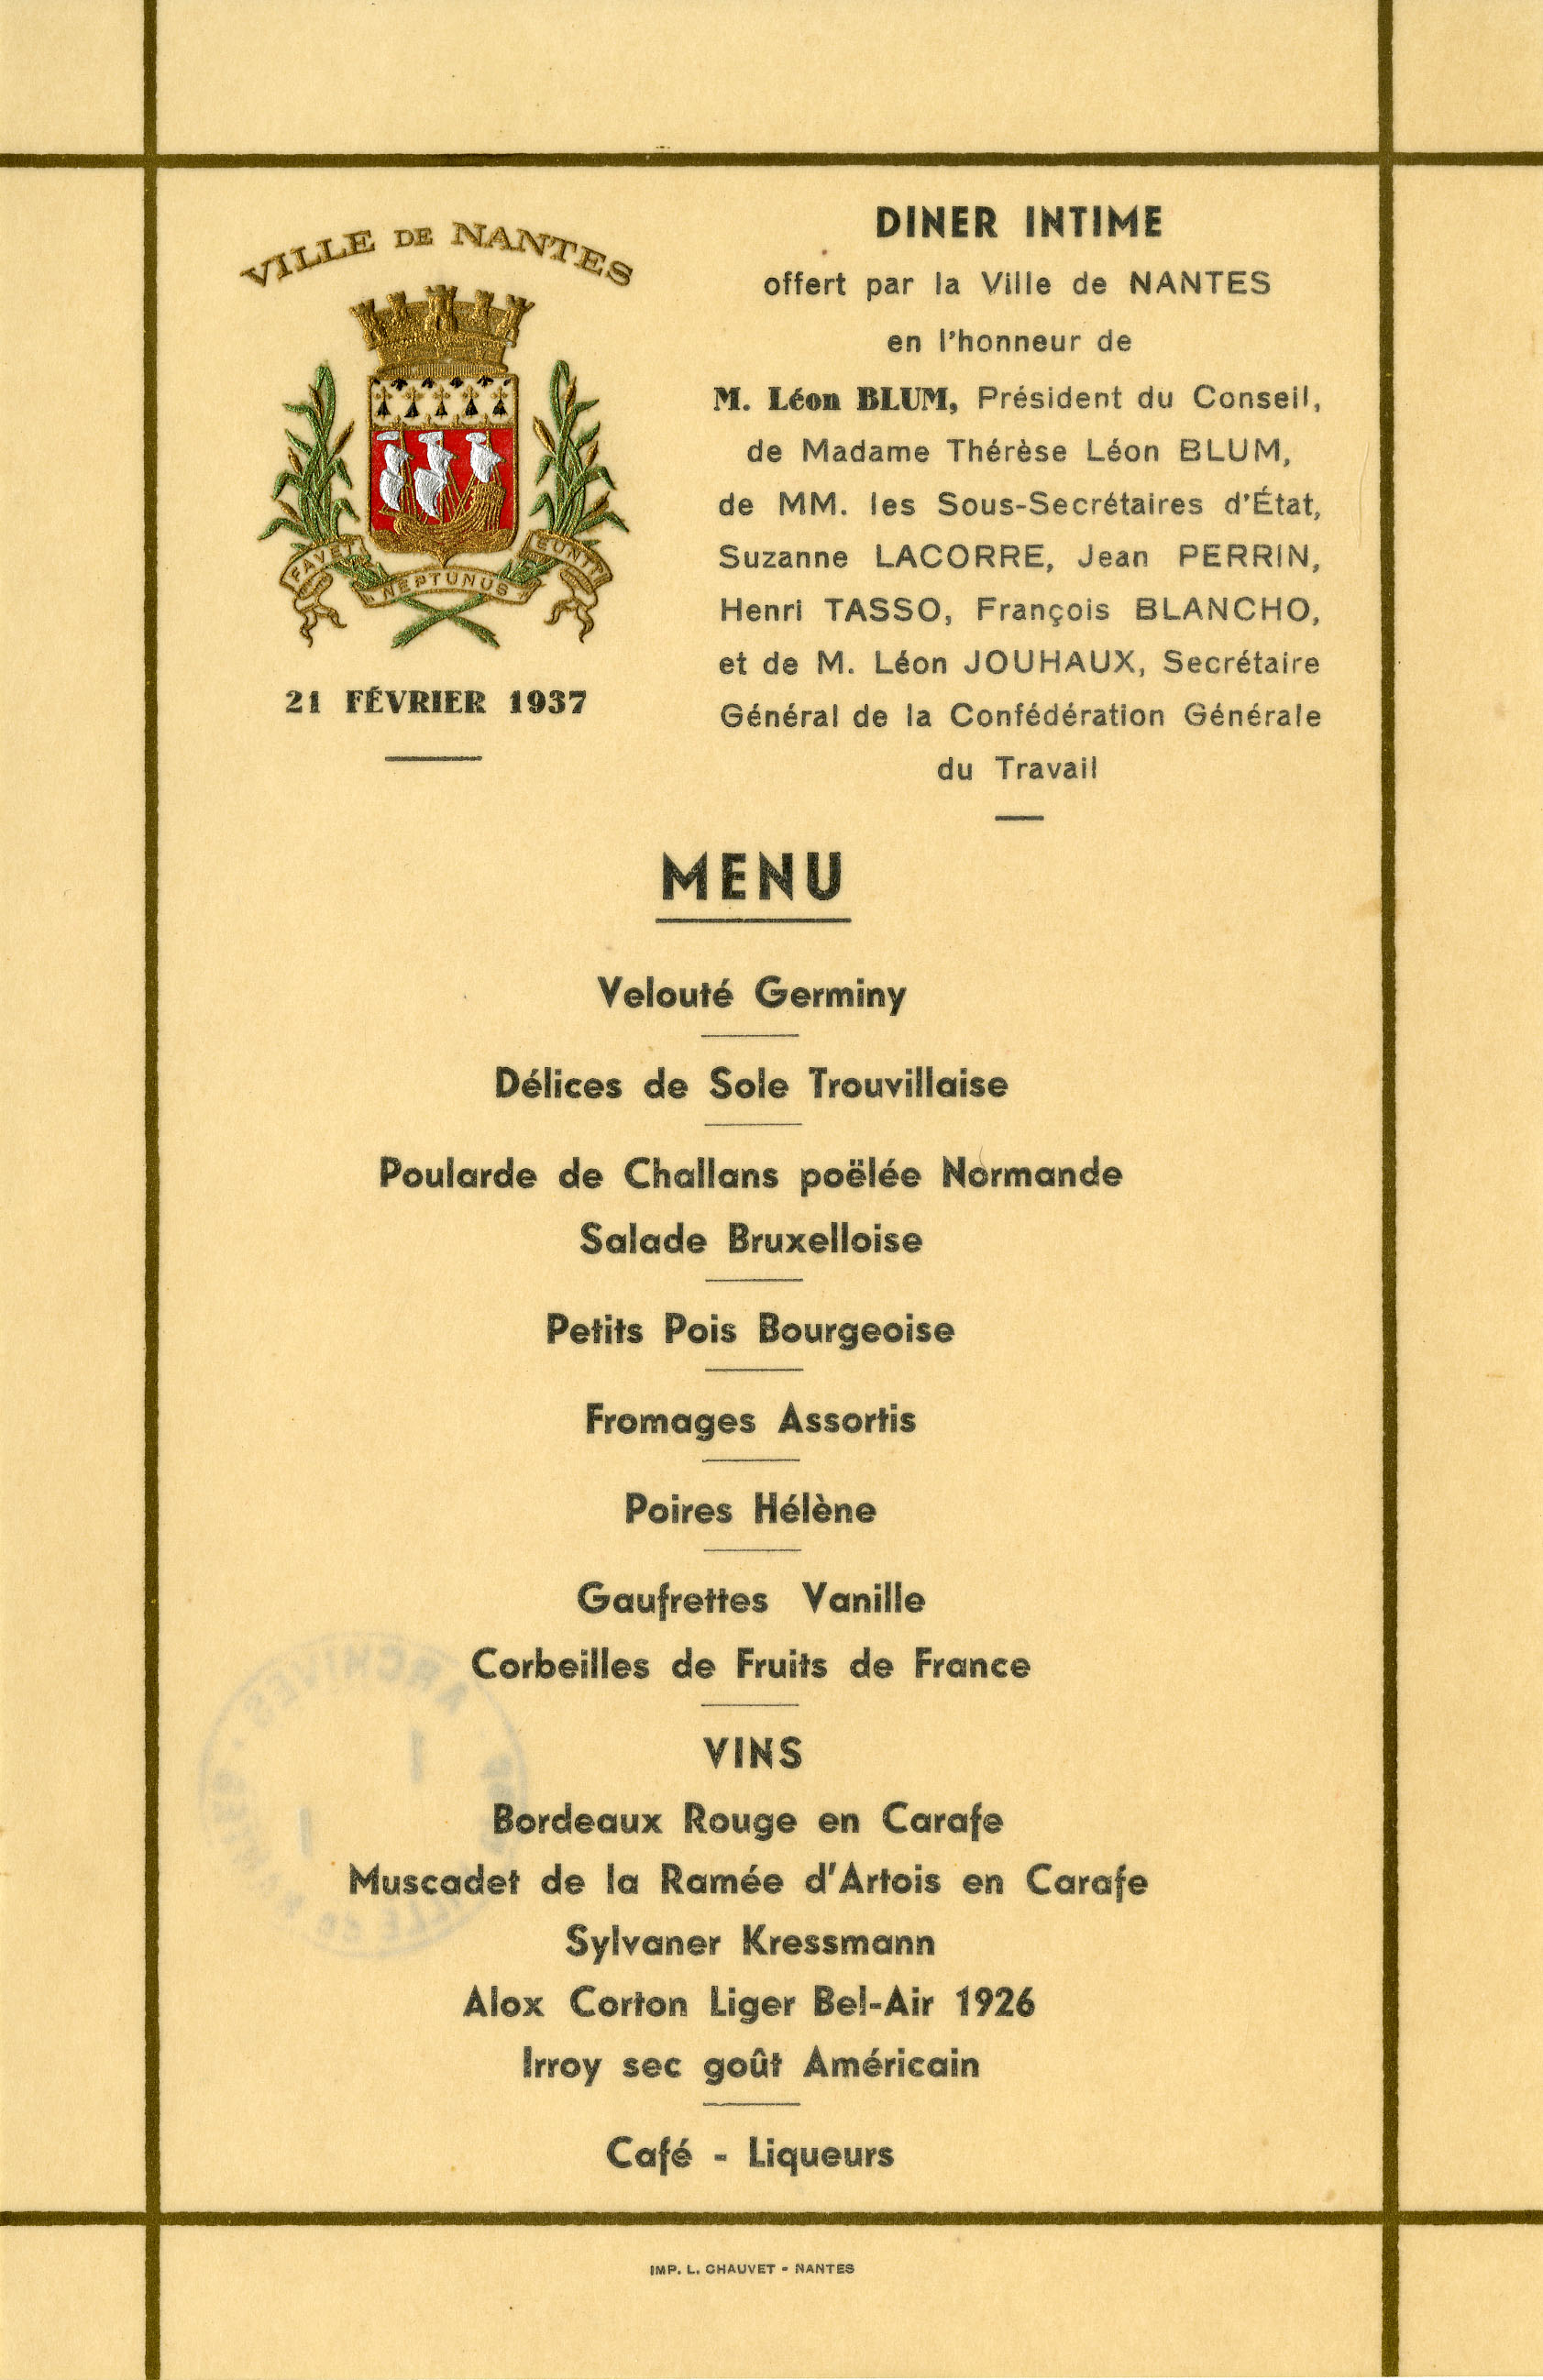 Menu du dîner offert par la Ville de Nantes en l'honneur de Léon Blum, le 21 février 1937 (I1C20D31)